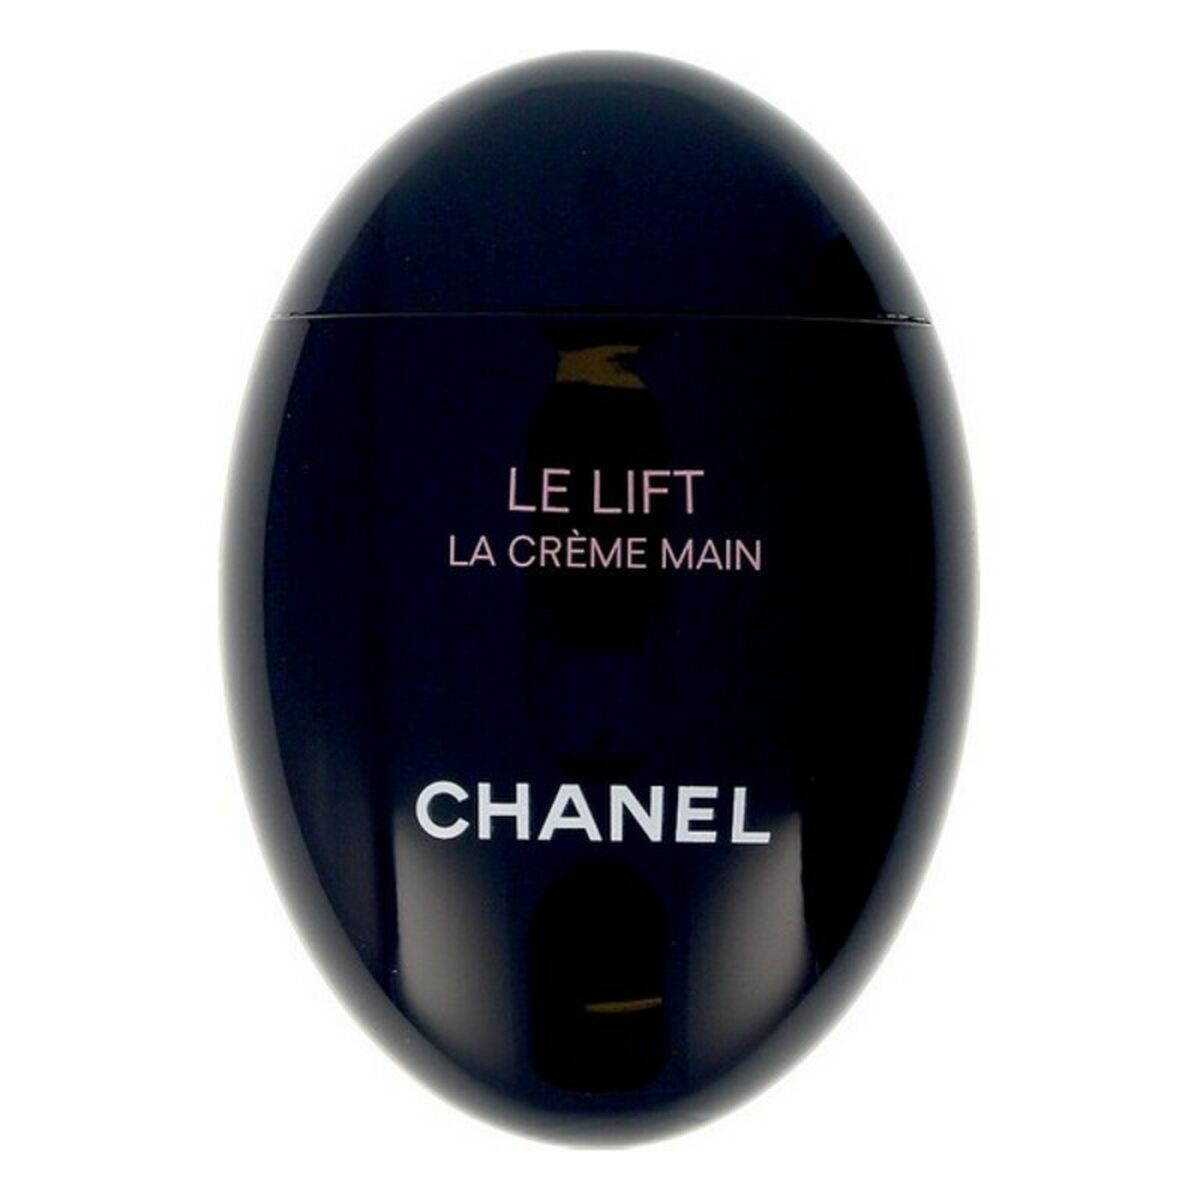 Kaufe Handcreme LE LIFT Chanel Le Lift 50 ml bei AWK Flagship um € 83.00